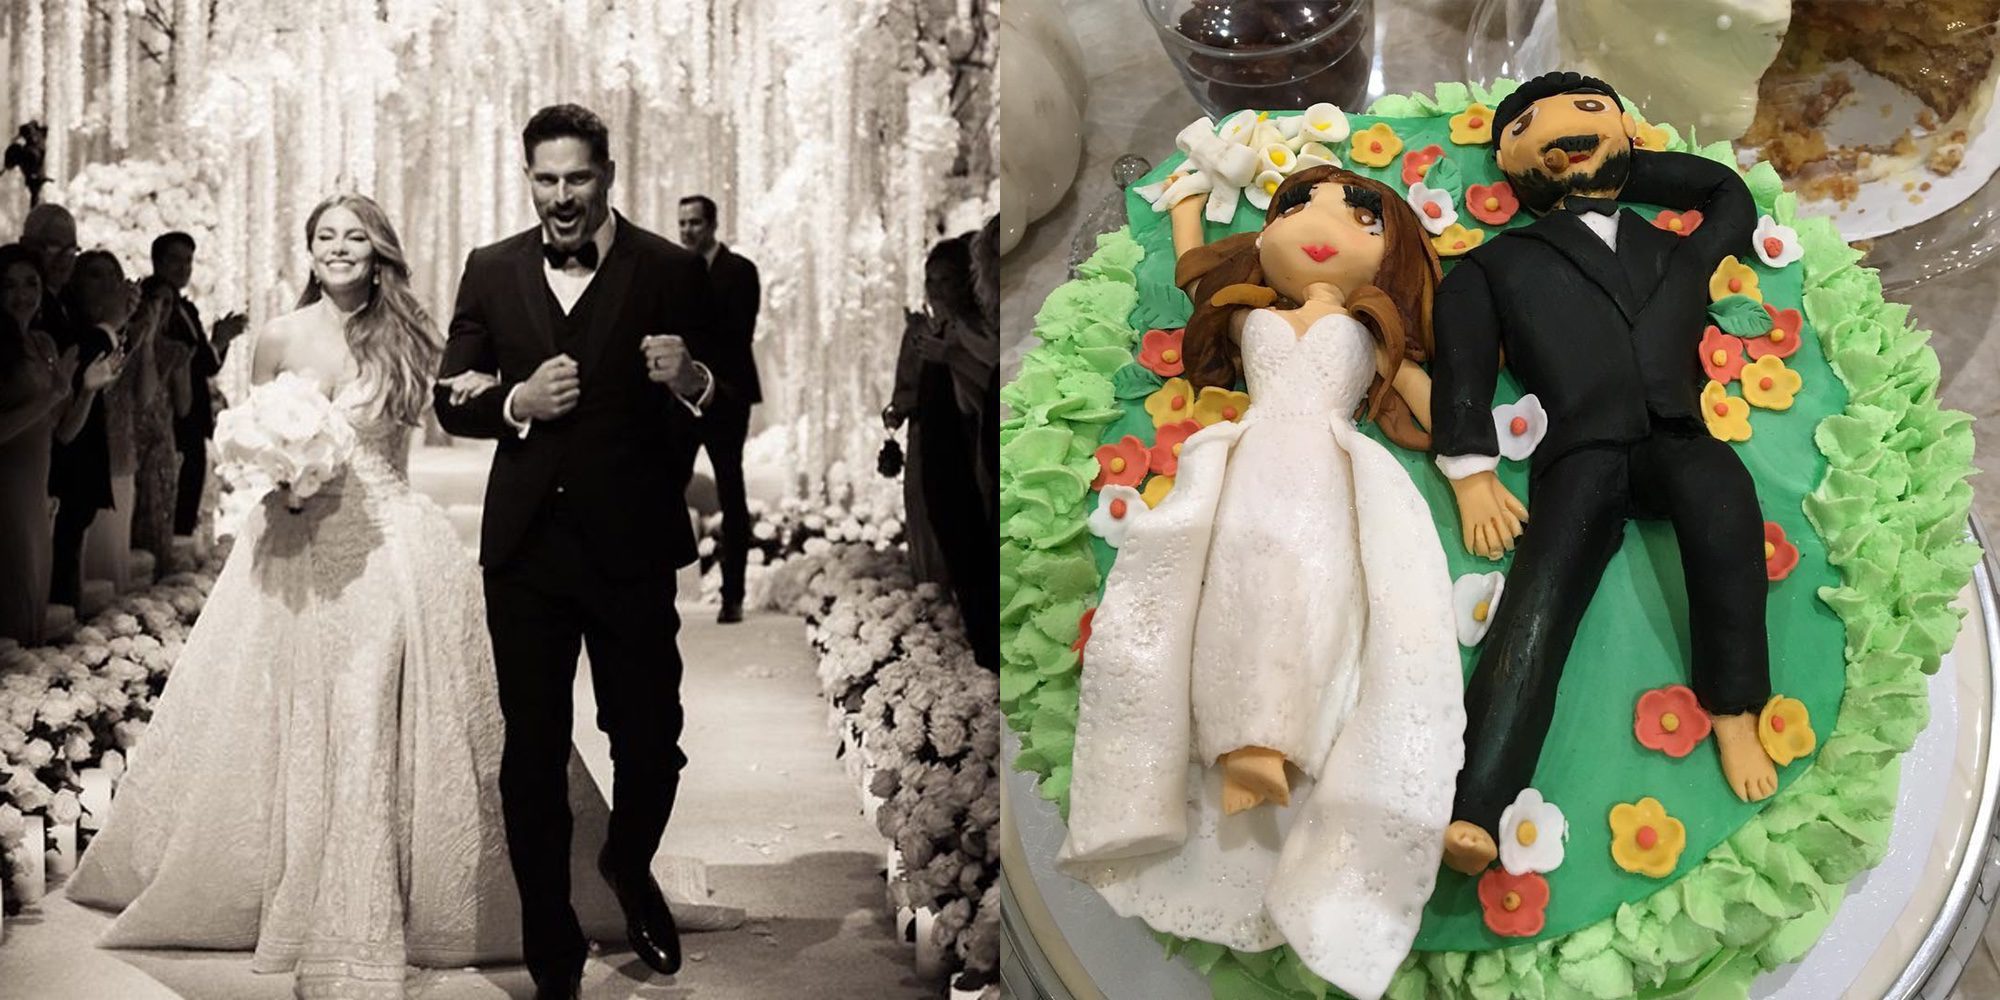 Sofia Vergara y Joe Manganiello celebran su primer aniversario de casados con nuevos fotos de su boda